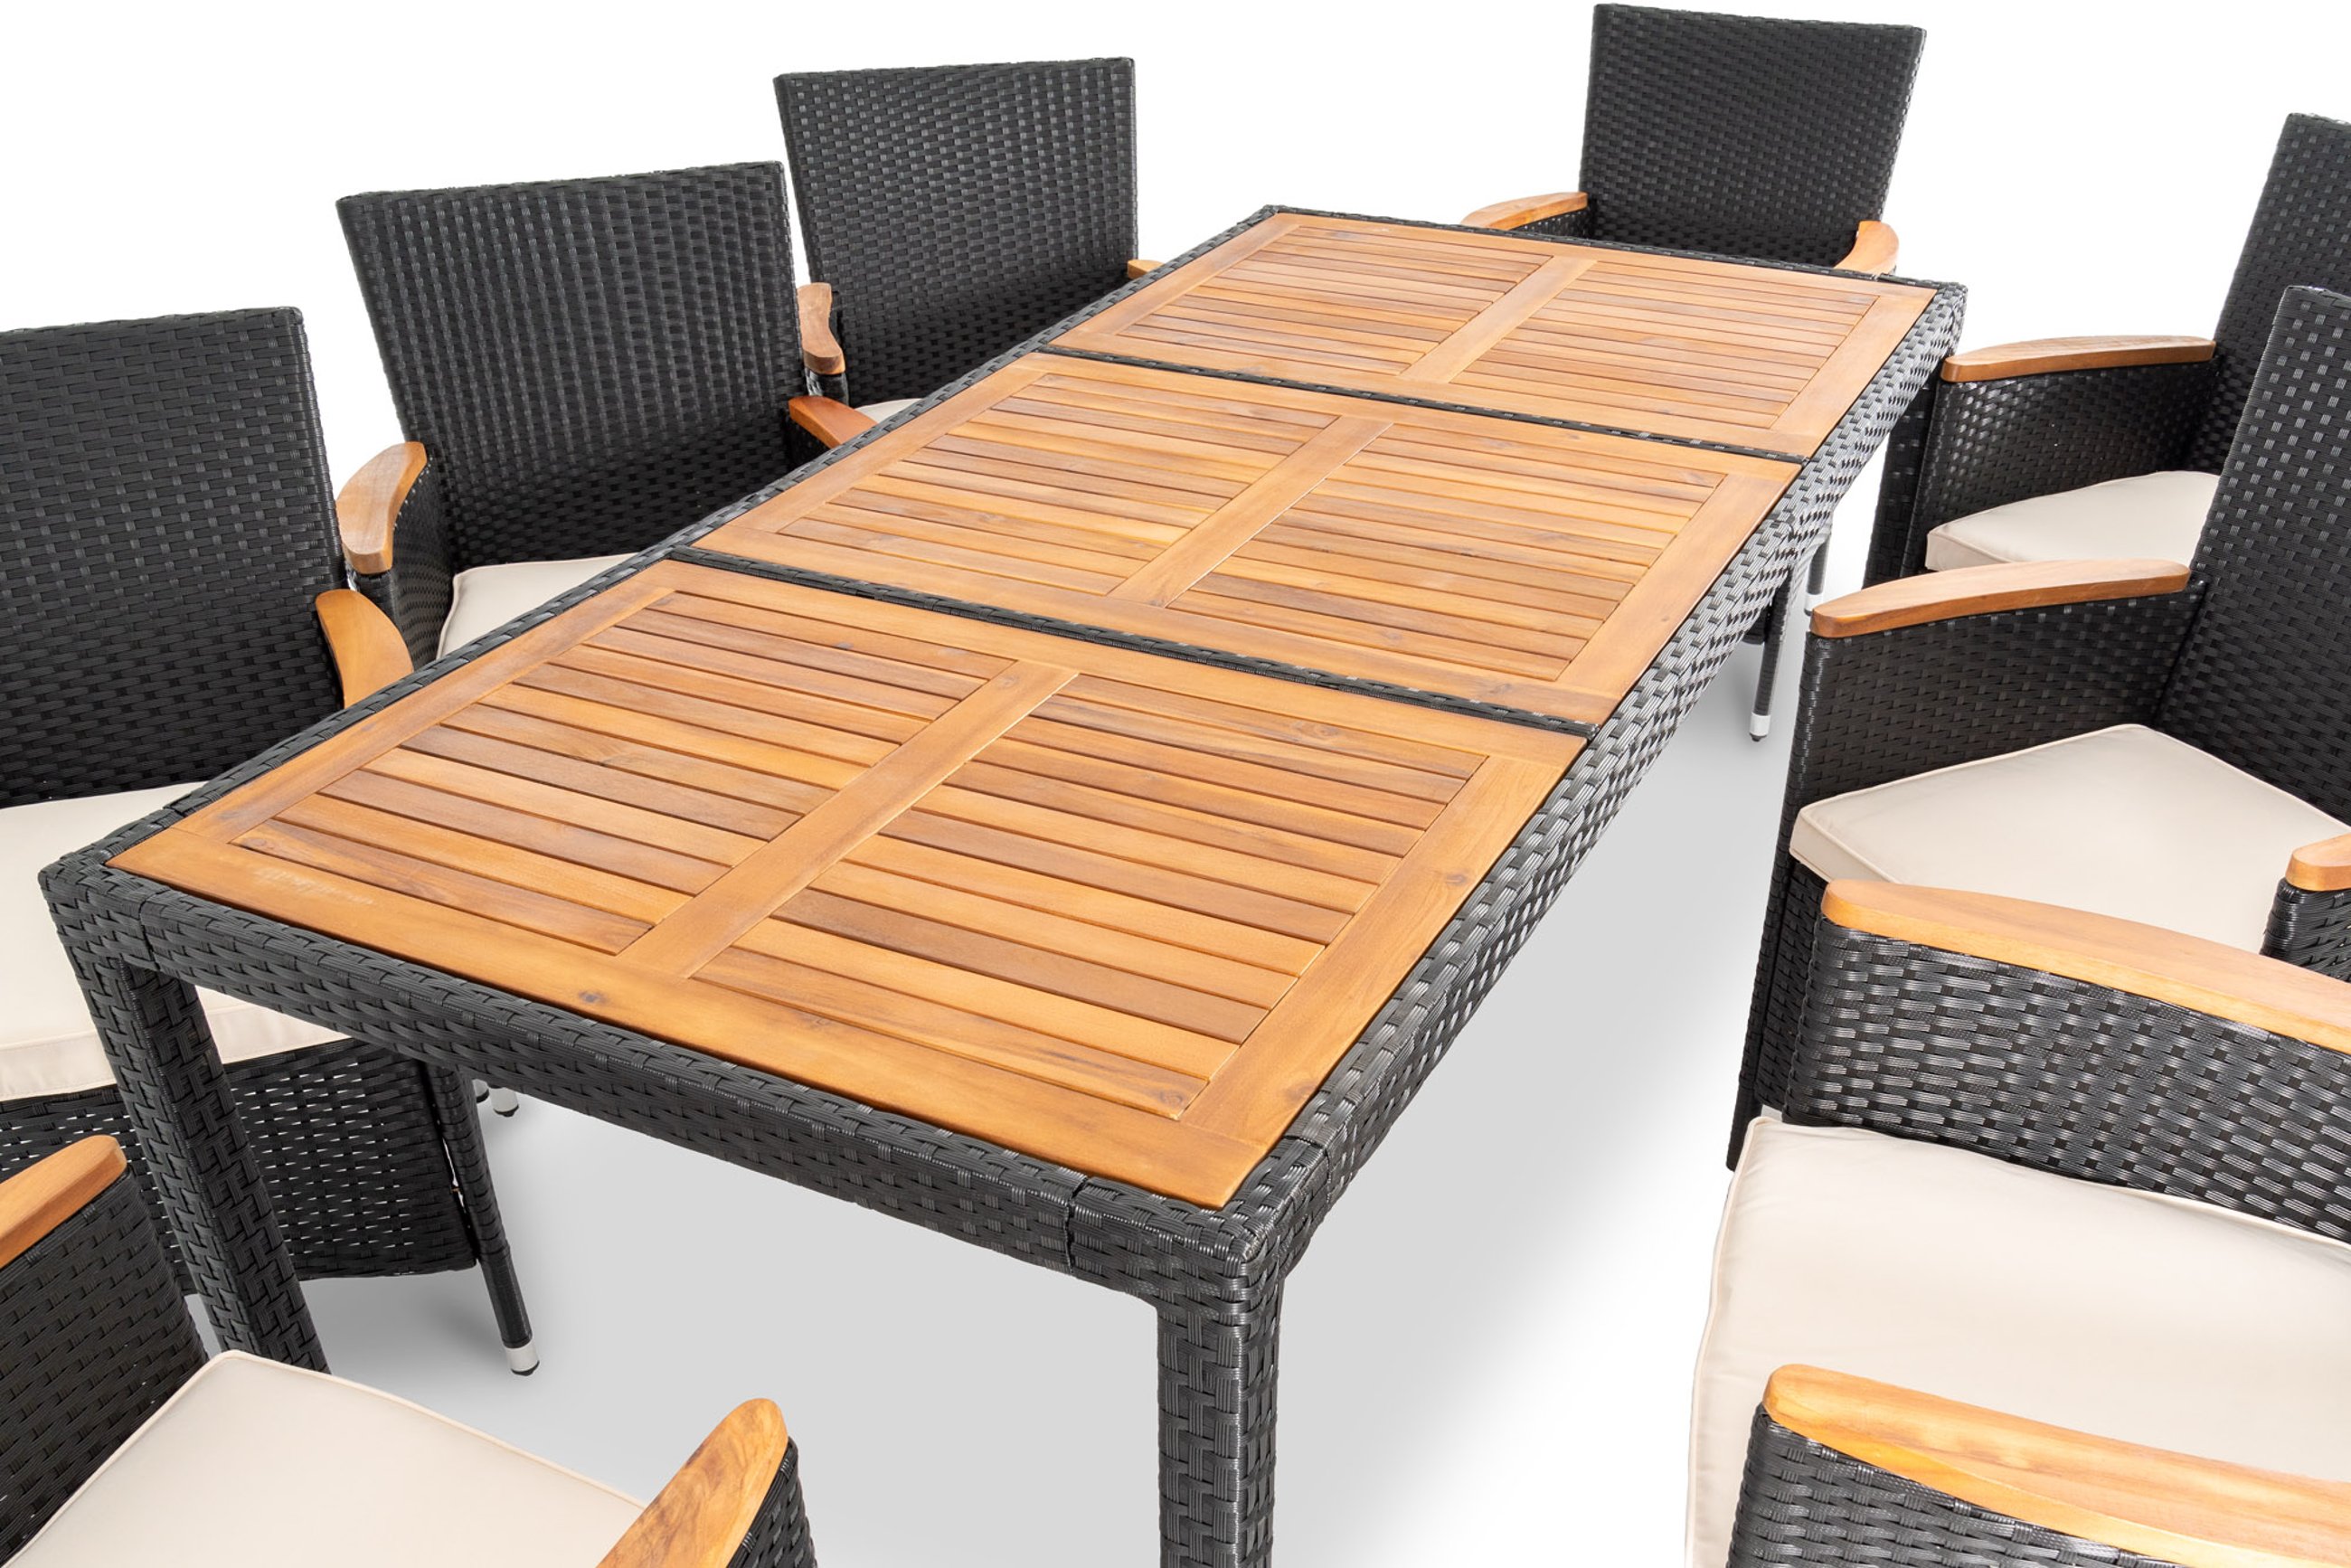 Przestronny stół w Verona czarna 8+1 o stabilnej konstrukcji idealnie sprawdzi się podczas spotkań z przyjaciółmi i rodziną